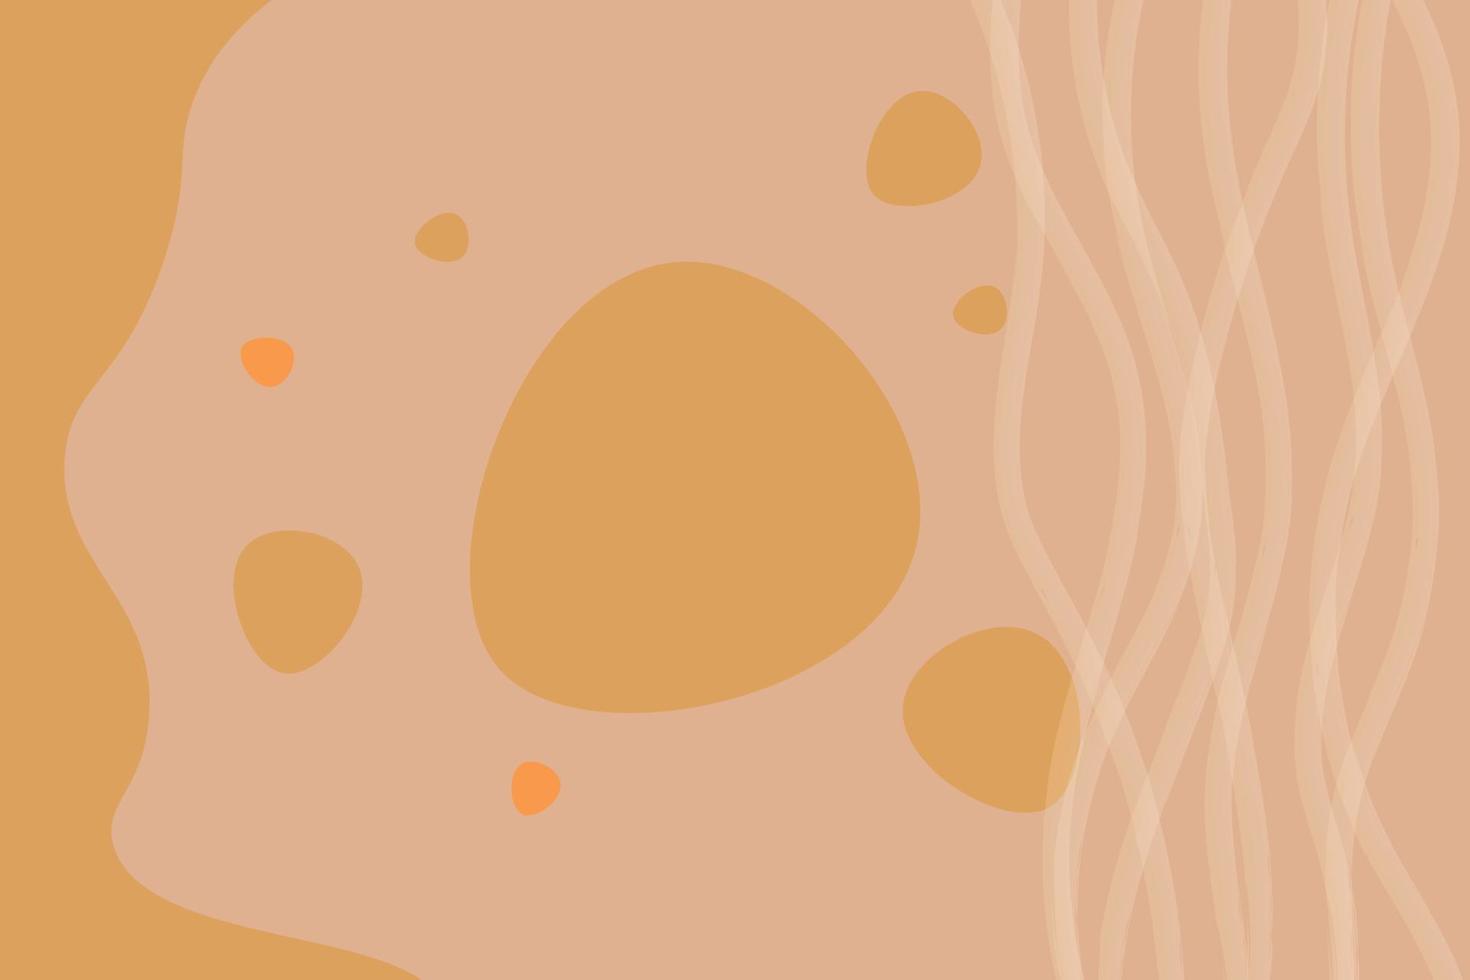 vektorillustration mit boho-stil. abstrakte Mode stilvolle Vorlagen mit organischen abstrakten Formen und Linien. neutraler beige, Terrakotta-Hintergrund im Boho-Stil. vektor